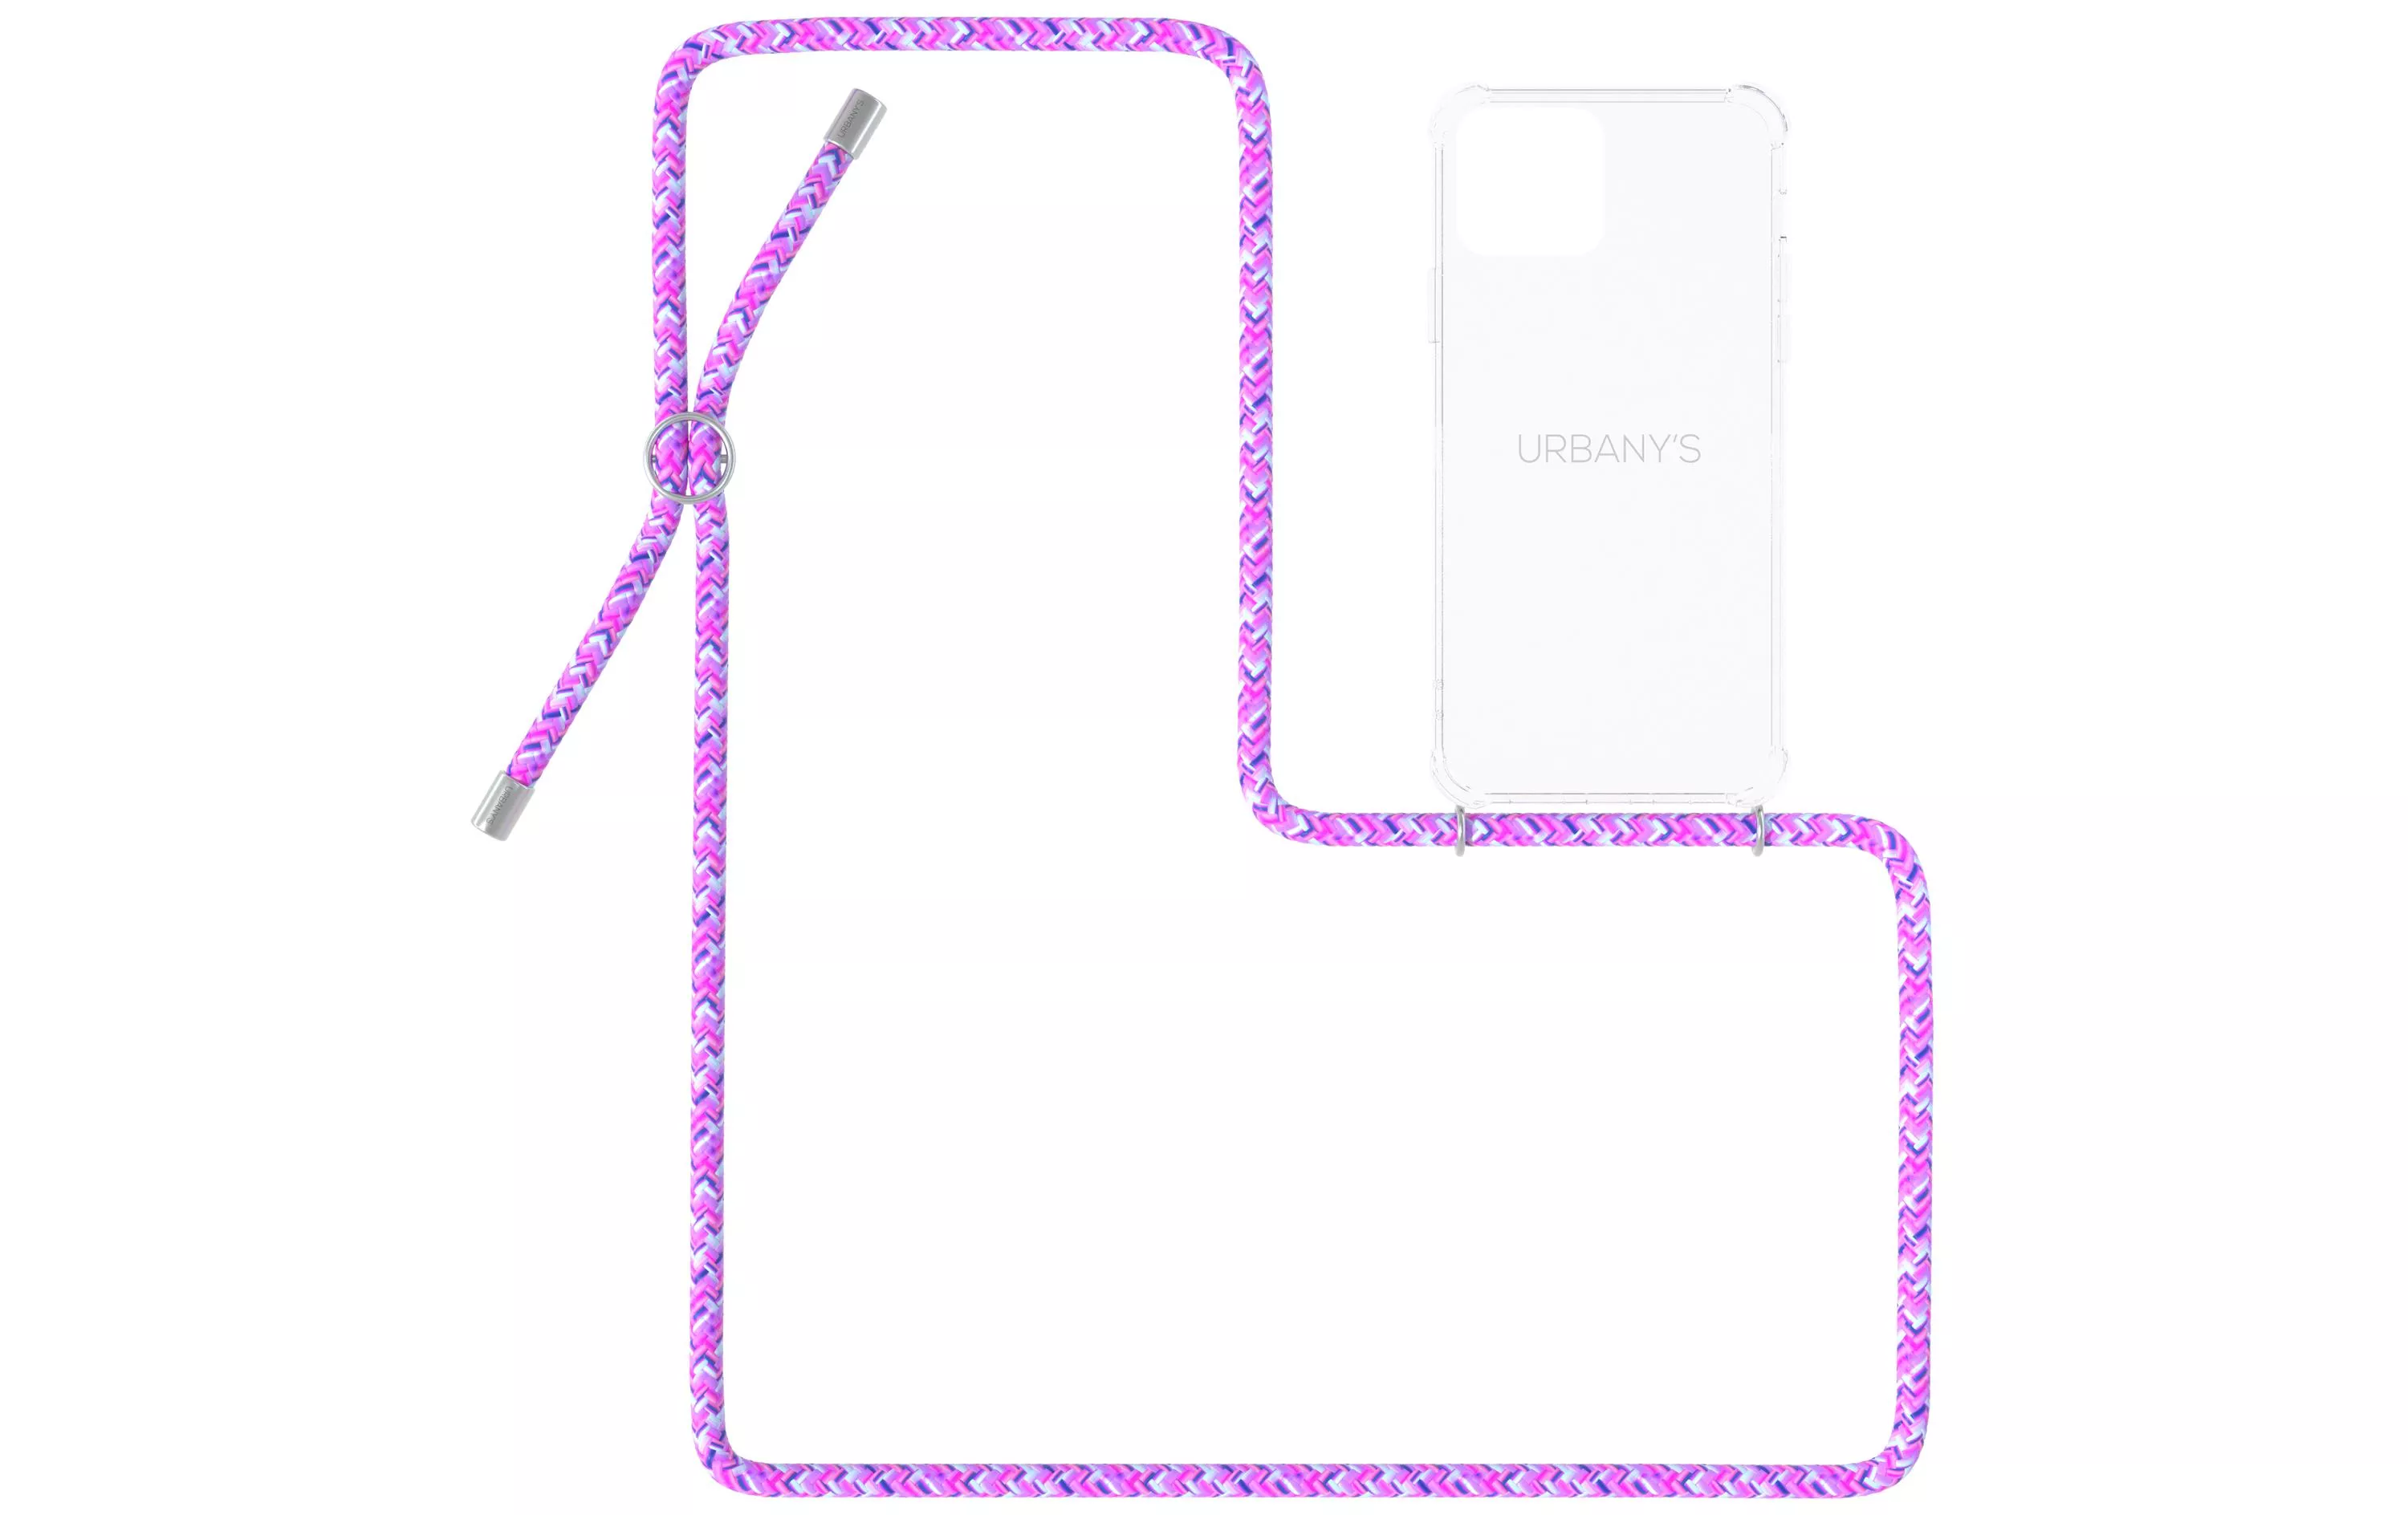 Necklace Case iPhone 11 Pro Max Lollipop Transparent